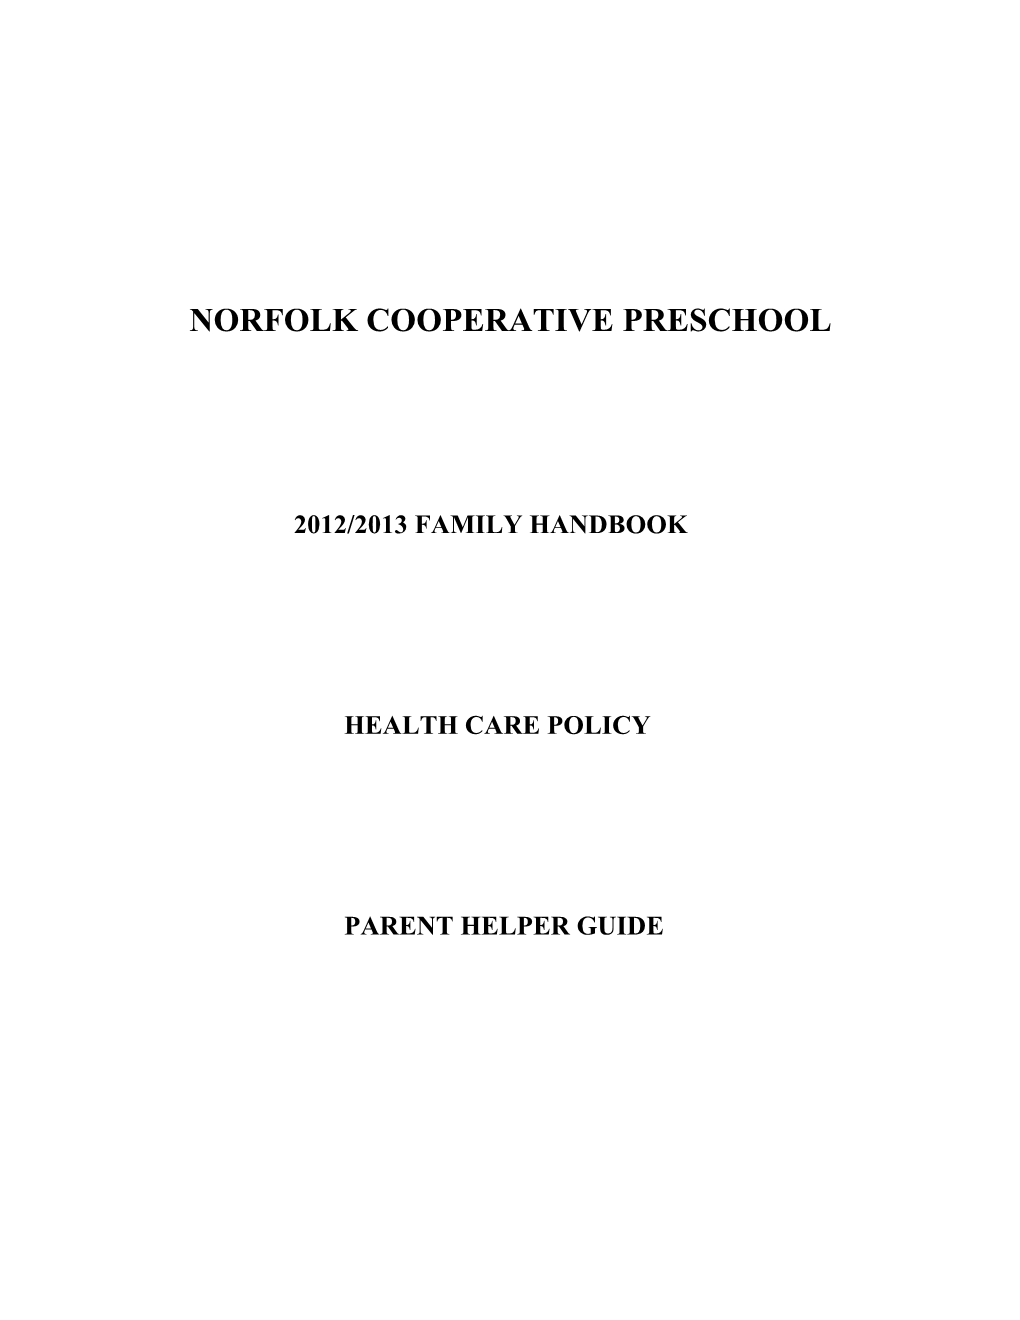 Norfolk Cooperative Preschool